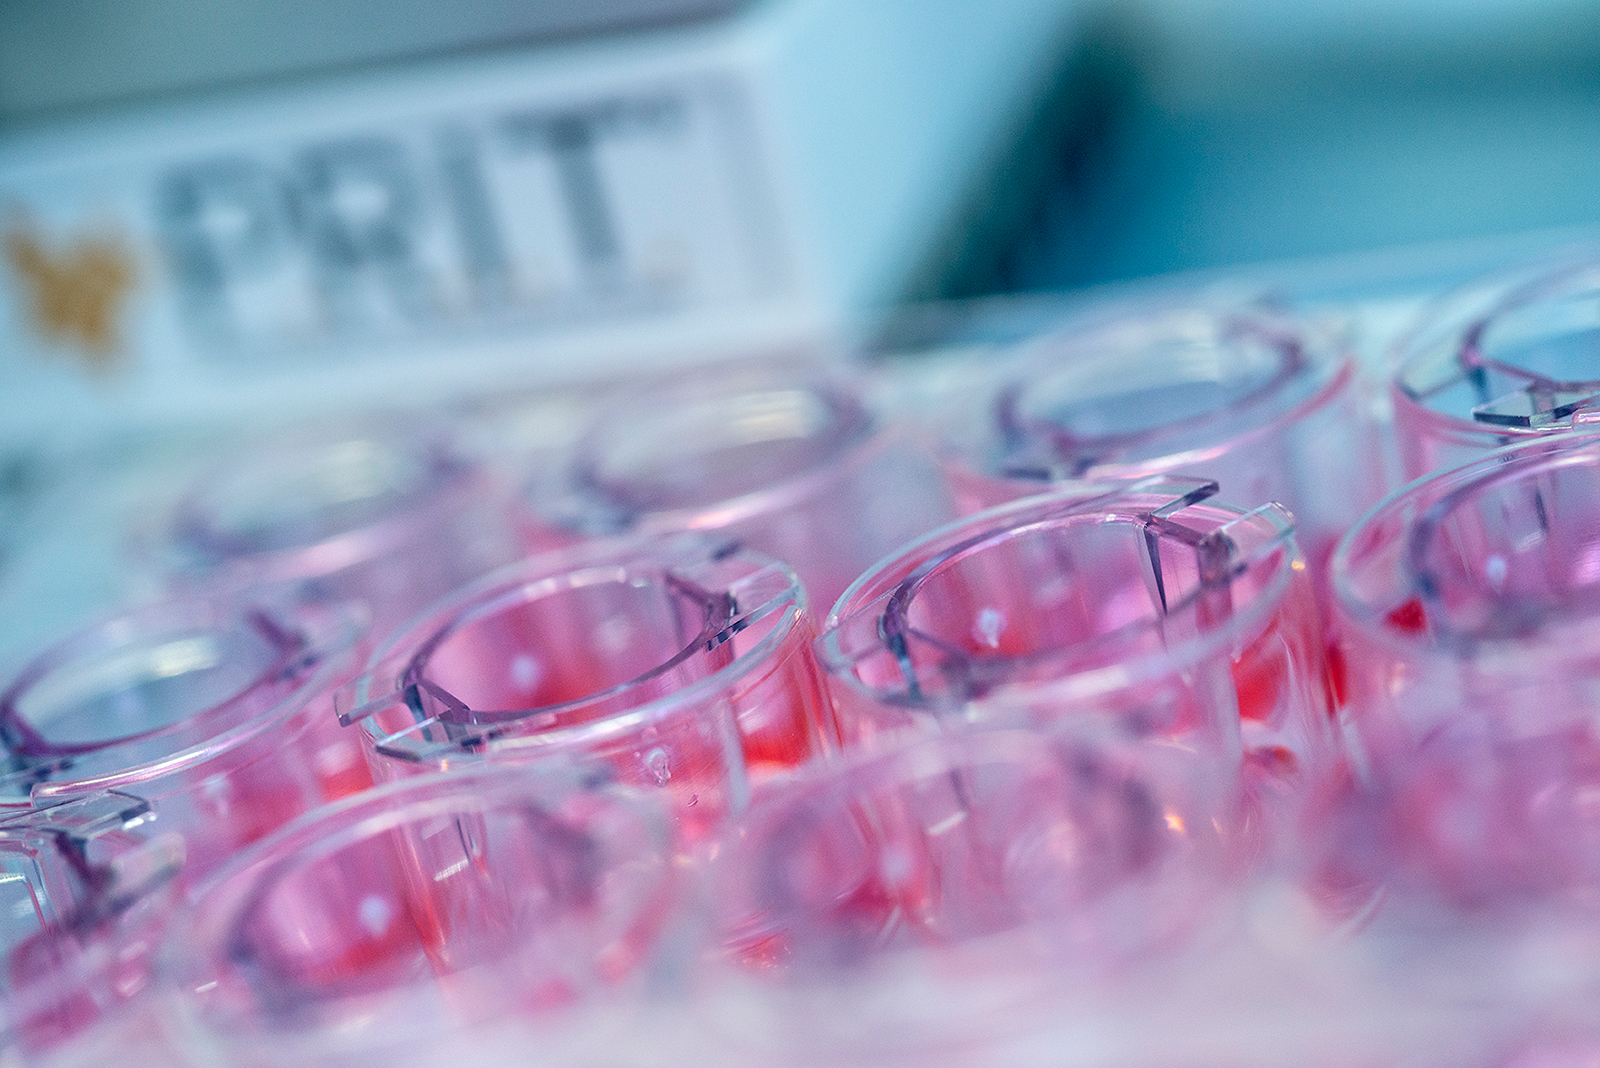 Mit dem am Fraunhofer ITEM entwickelten Expositionsgerät P.R.I.T.® ExpoCube® können verschiedene Klassen inhalierbarer Substanzen mit hoher Reproduzierbarkeit und ausreichender Dosiskontrolle geprüft werden. 